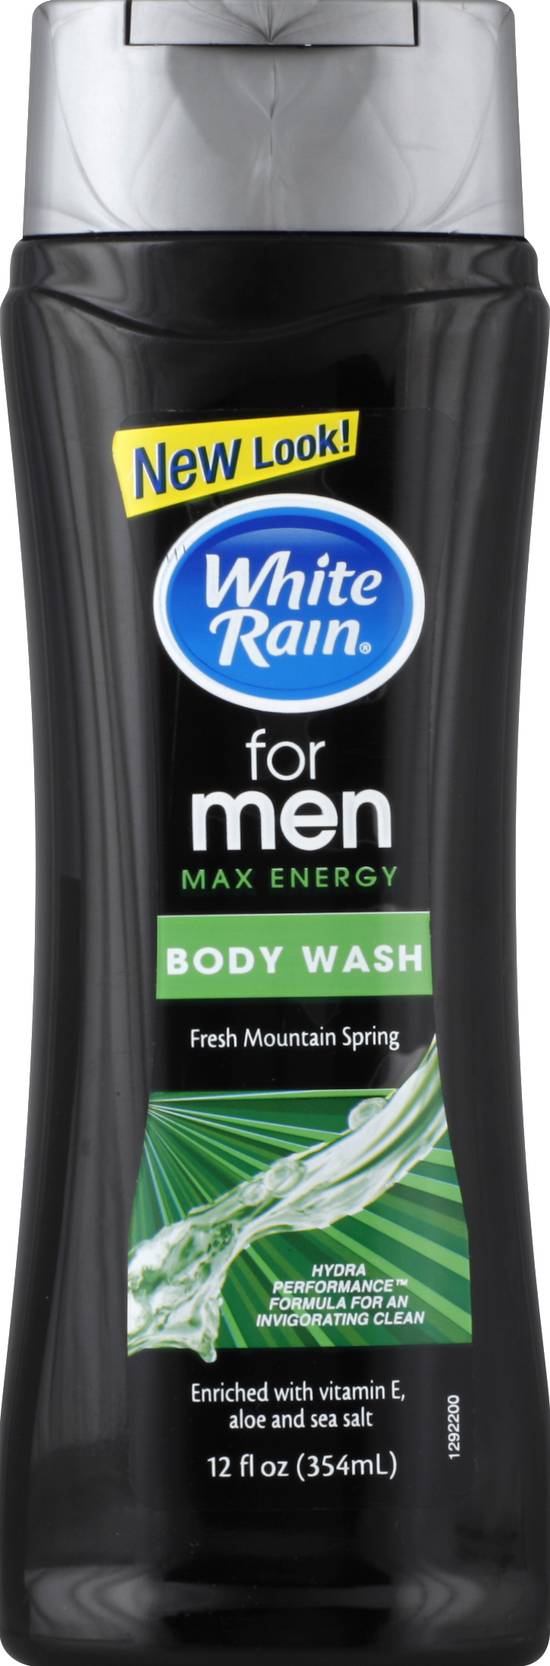 White Rain Fresh Mountain Spring For Men Body Wash